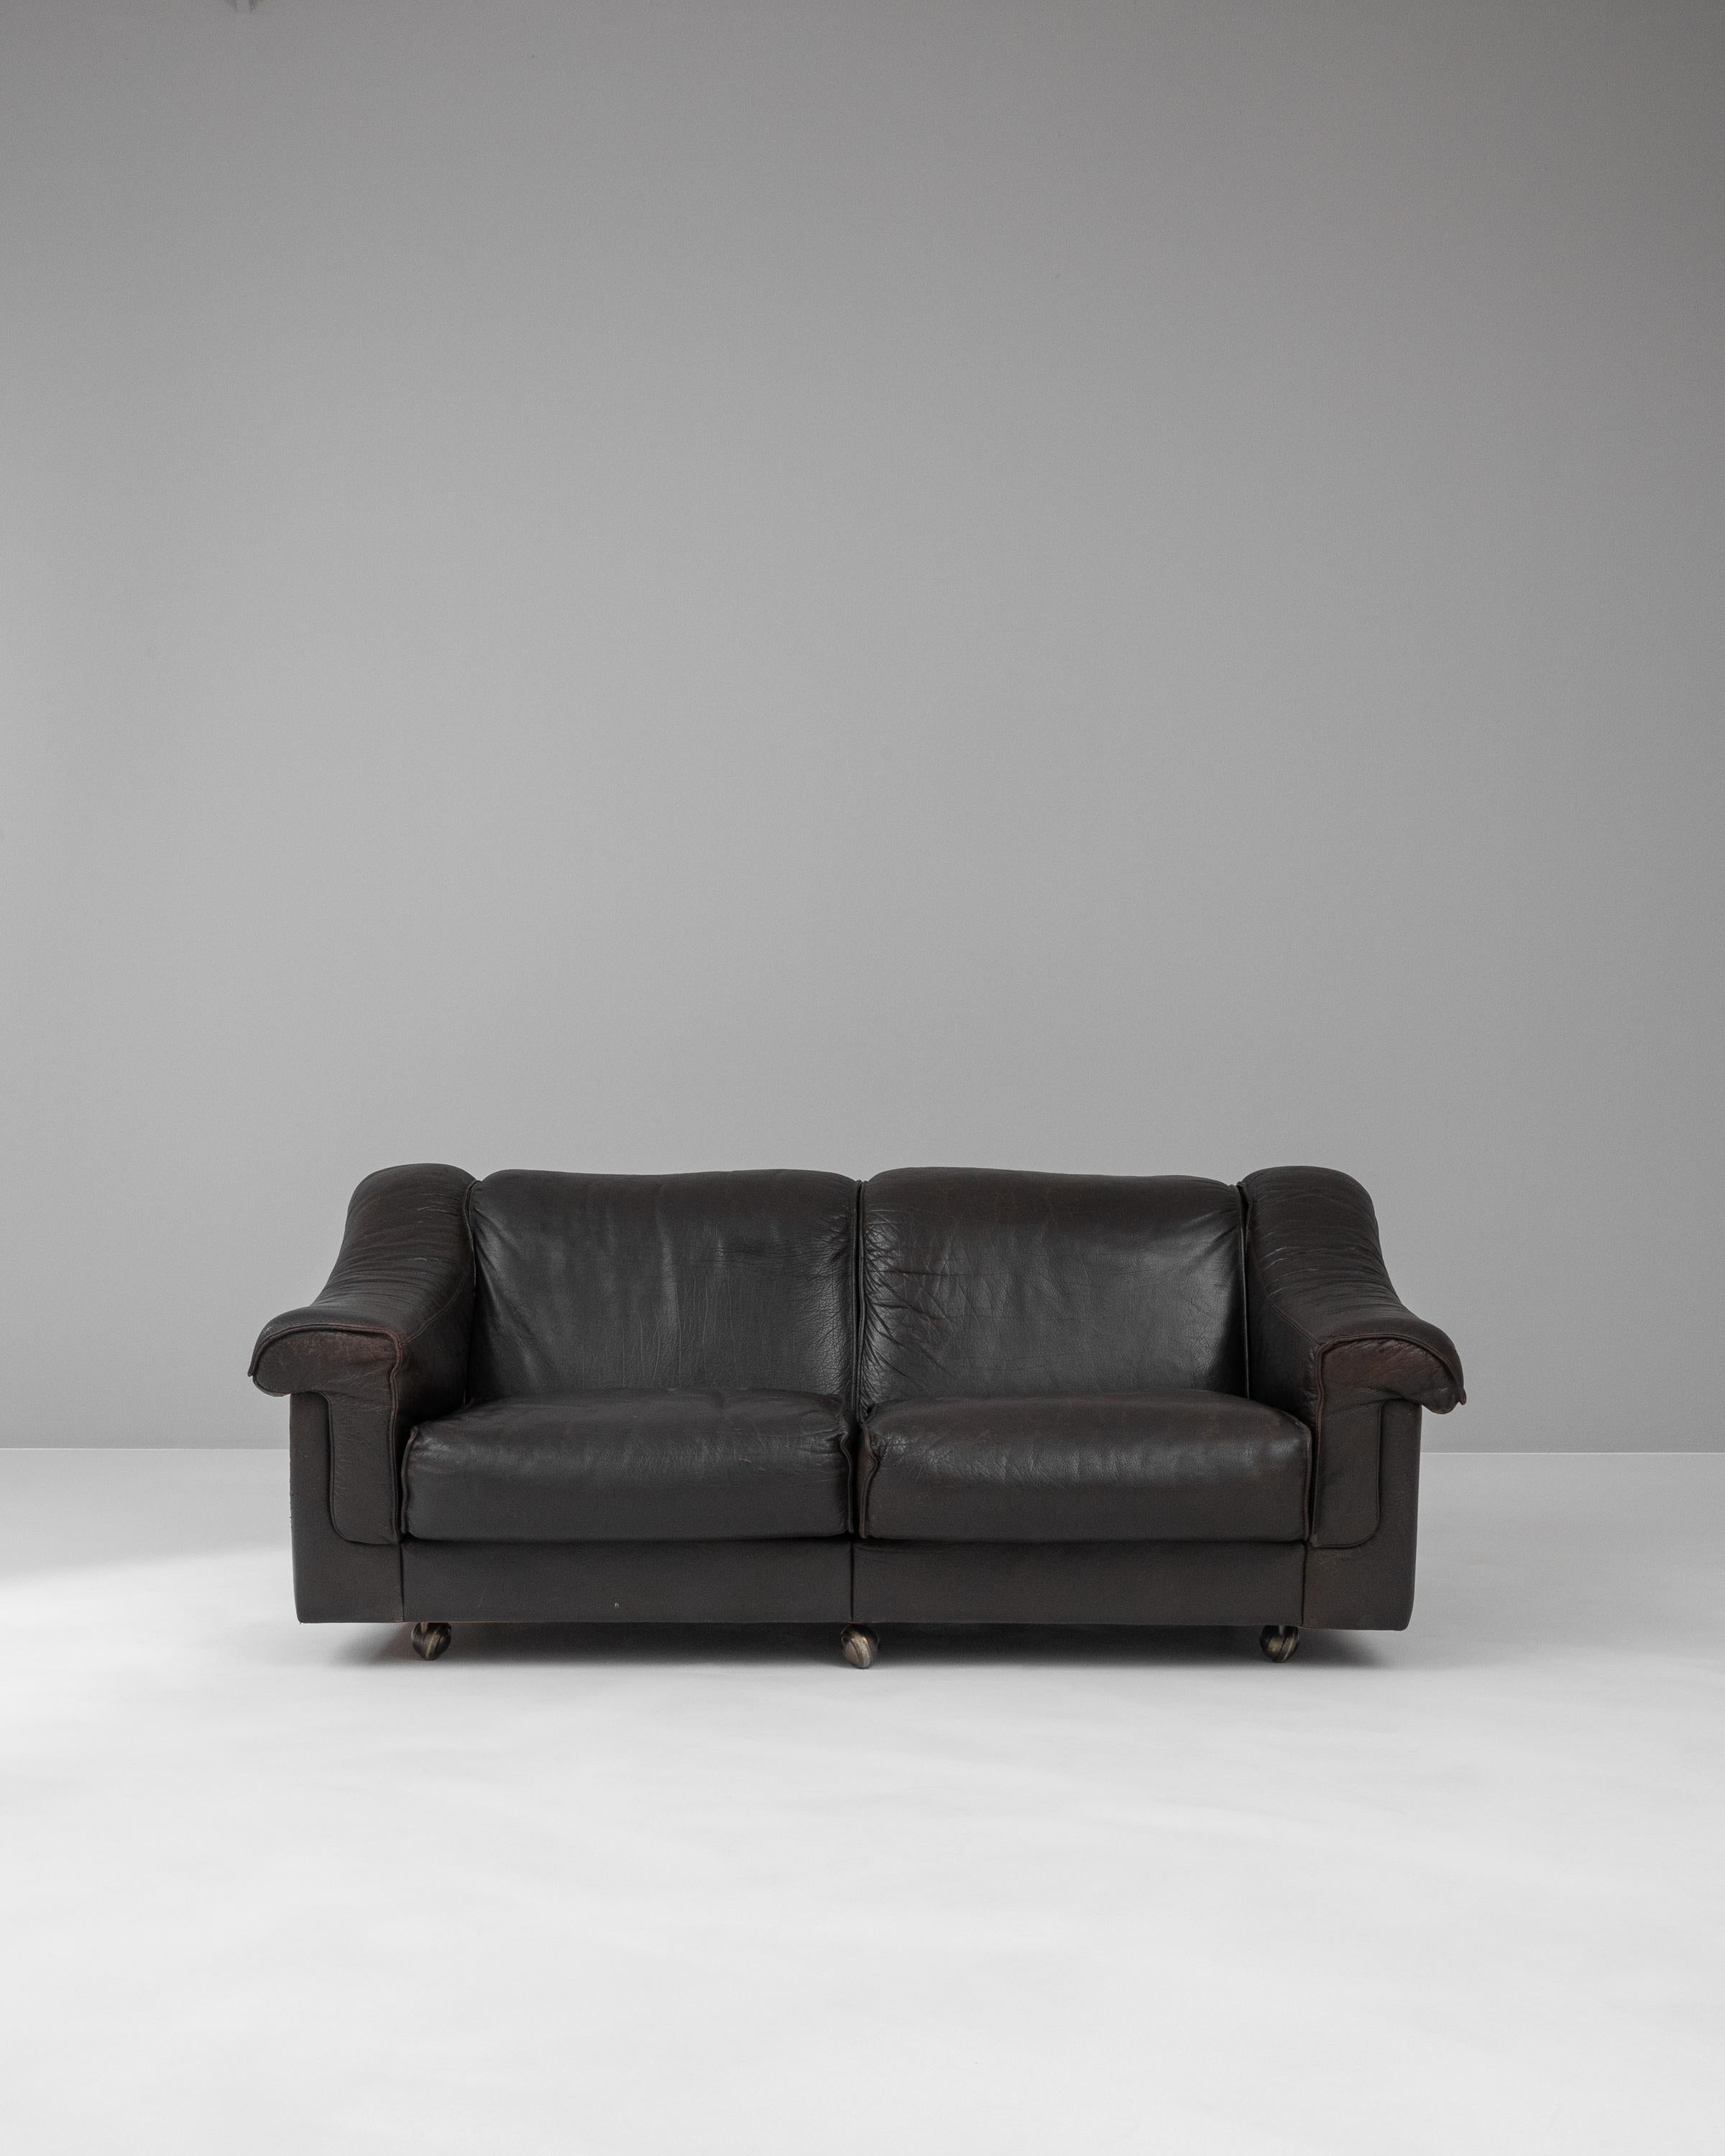 Dieses dänische Ledersofa aus dem 20. Jahrhundert verkörpert die Eleganz des skandinavischen Designs und bietet eine nahtlose Mischung aus Stil und Komfort. Das mit größter Sorgfalt gefertigte Sofa besteht aus reichhaltigem, schokoladenfarbenem